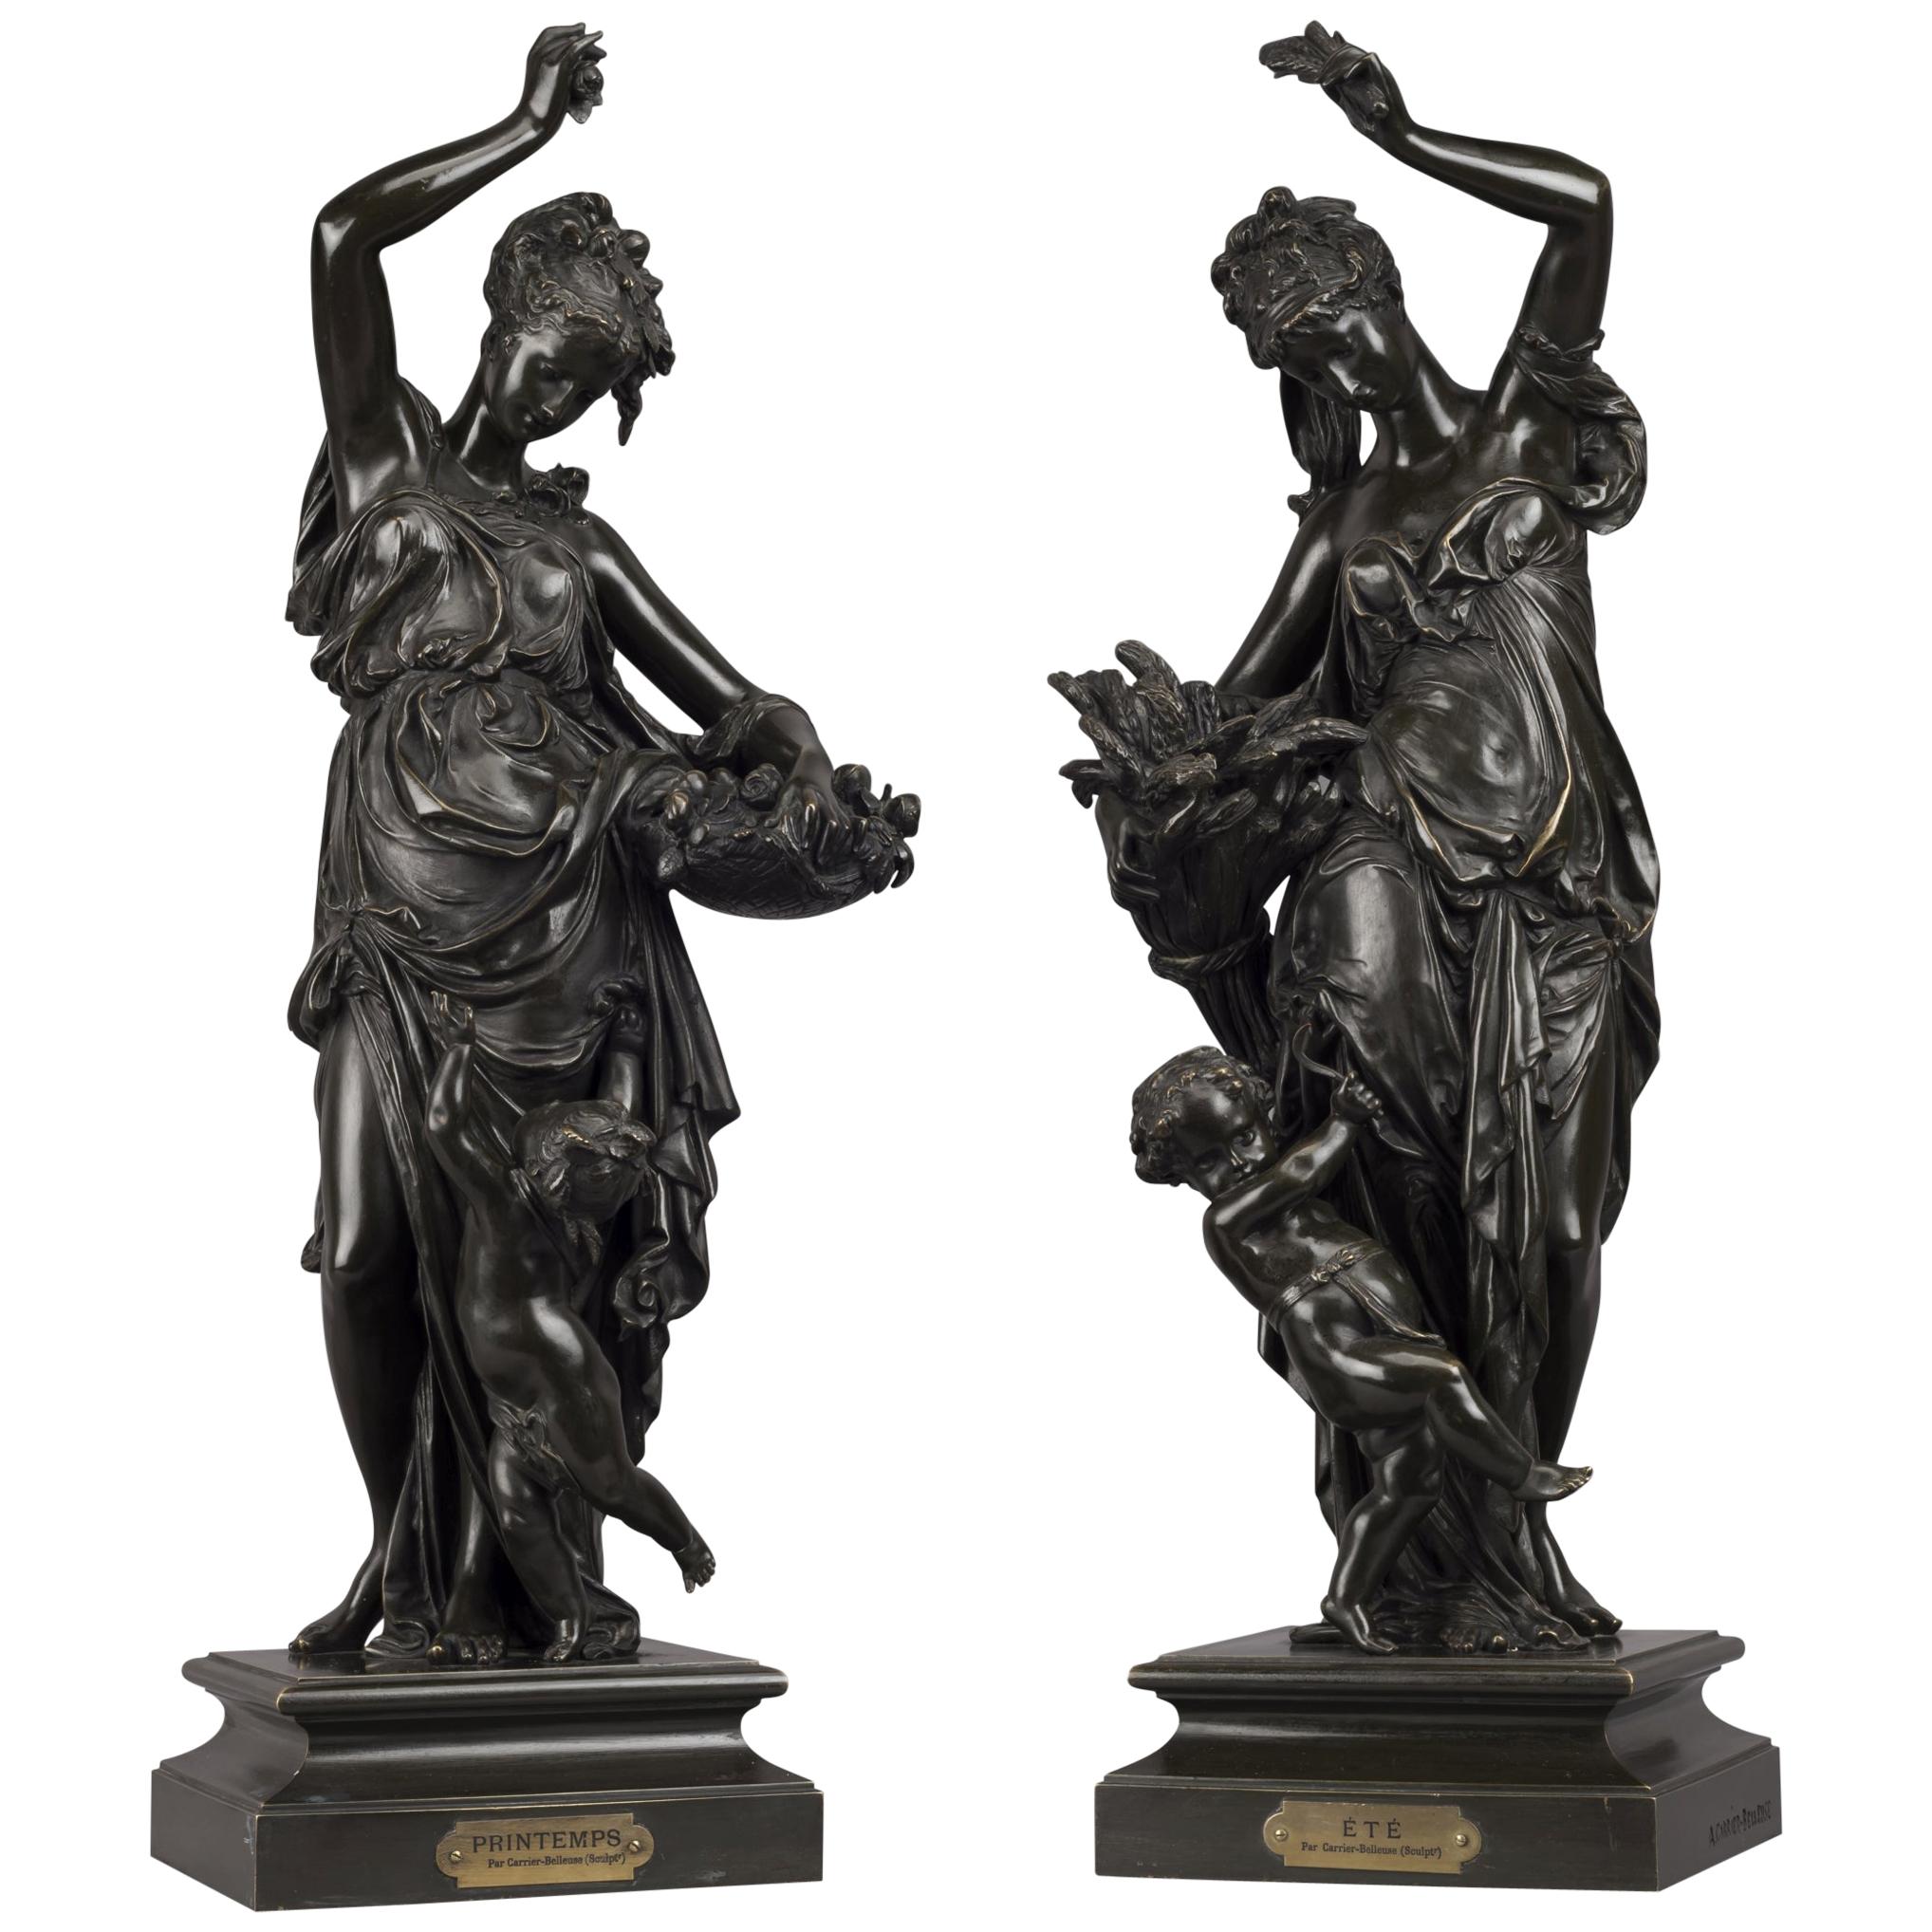 Le Printemps et L'Eté, Bronze Figures After Carrier-Belleuse. French, circa 1870